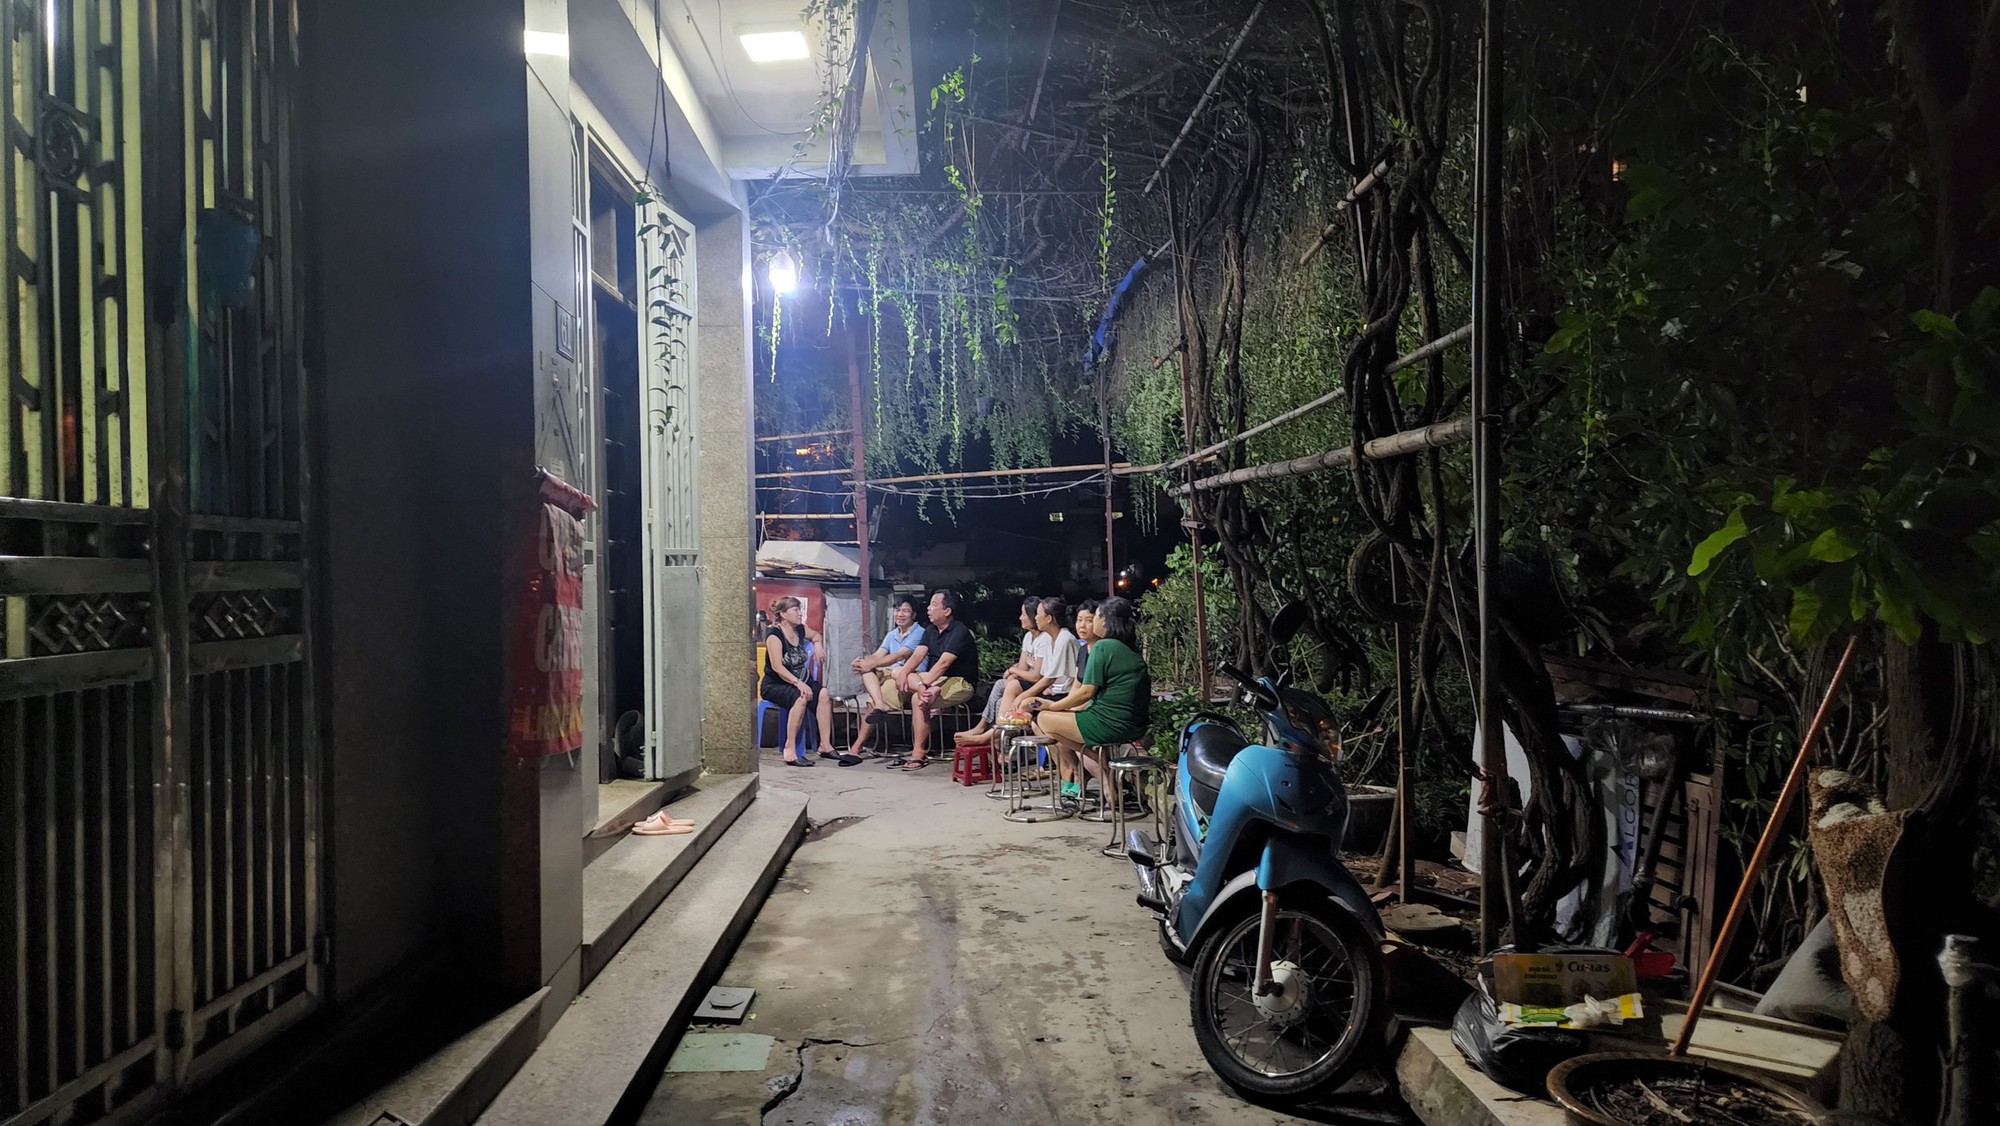 Đêm khuya ở nhà đội trưởng phòng cháy chữa cháy hy sinh trong vụ cháy quán karaoke ở Hà Nội - Ảnh 1.